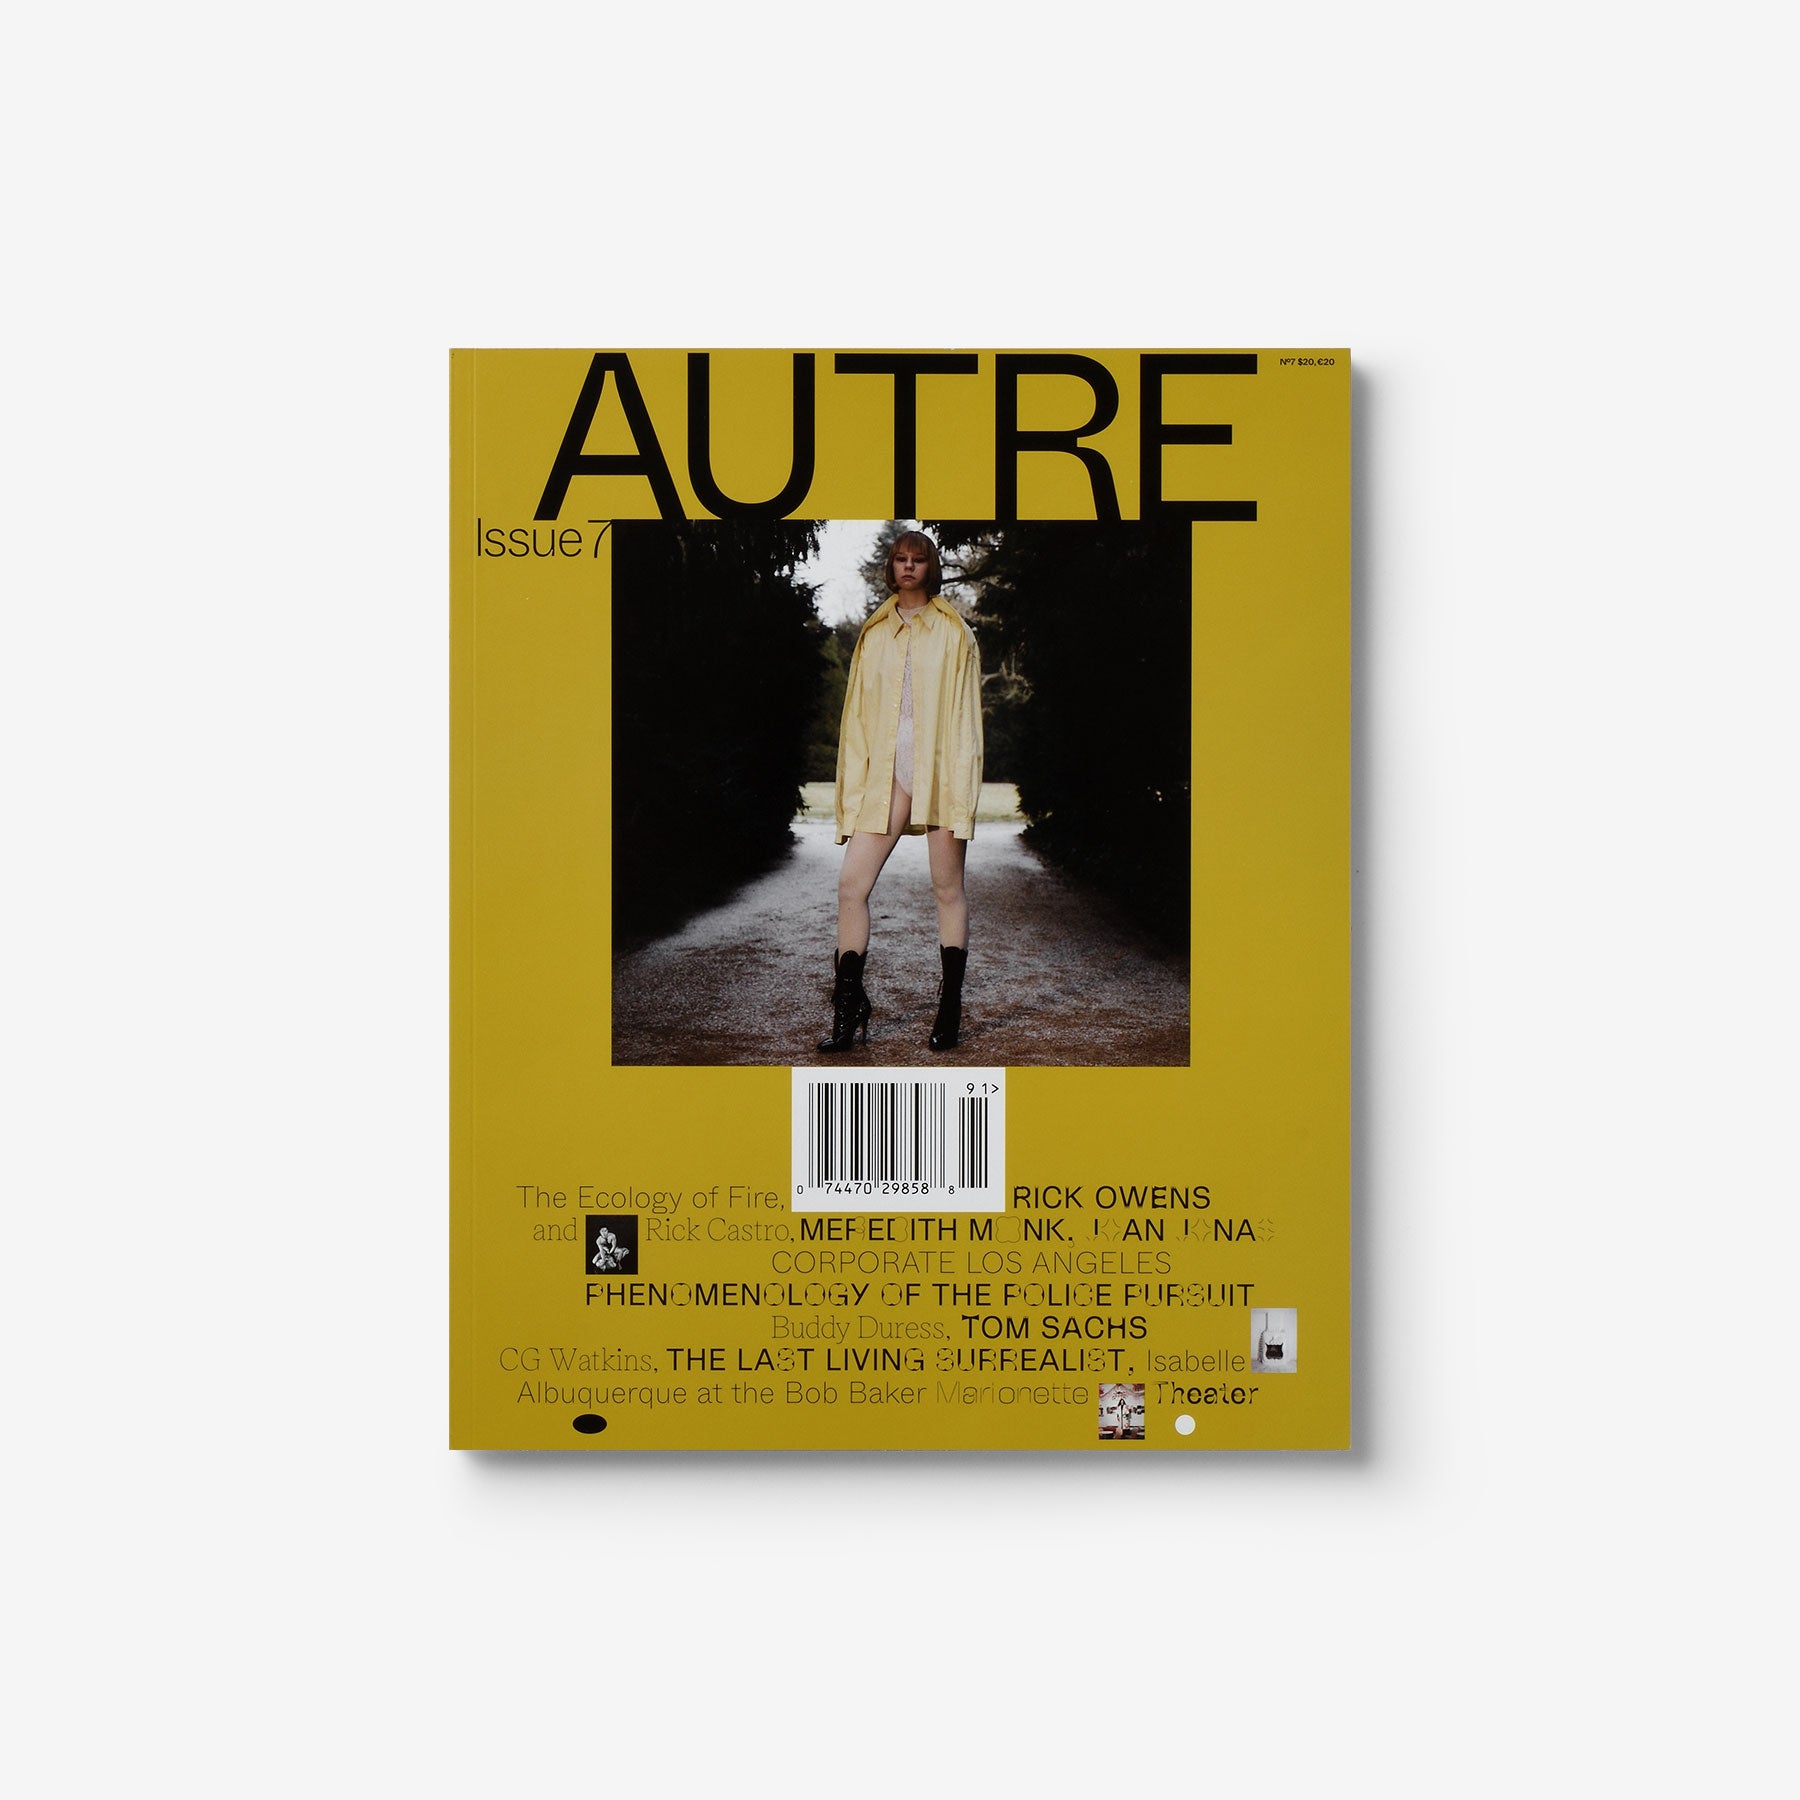 Autre Magazine Issue 7